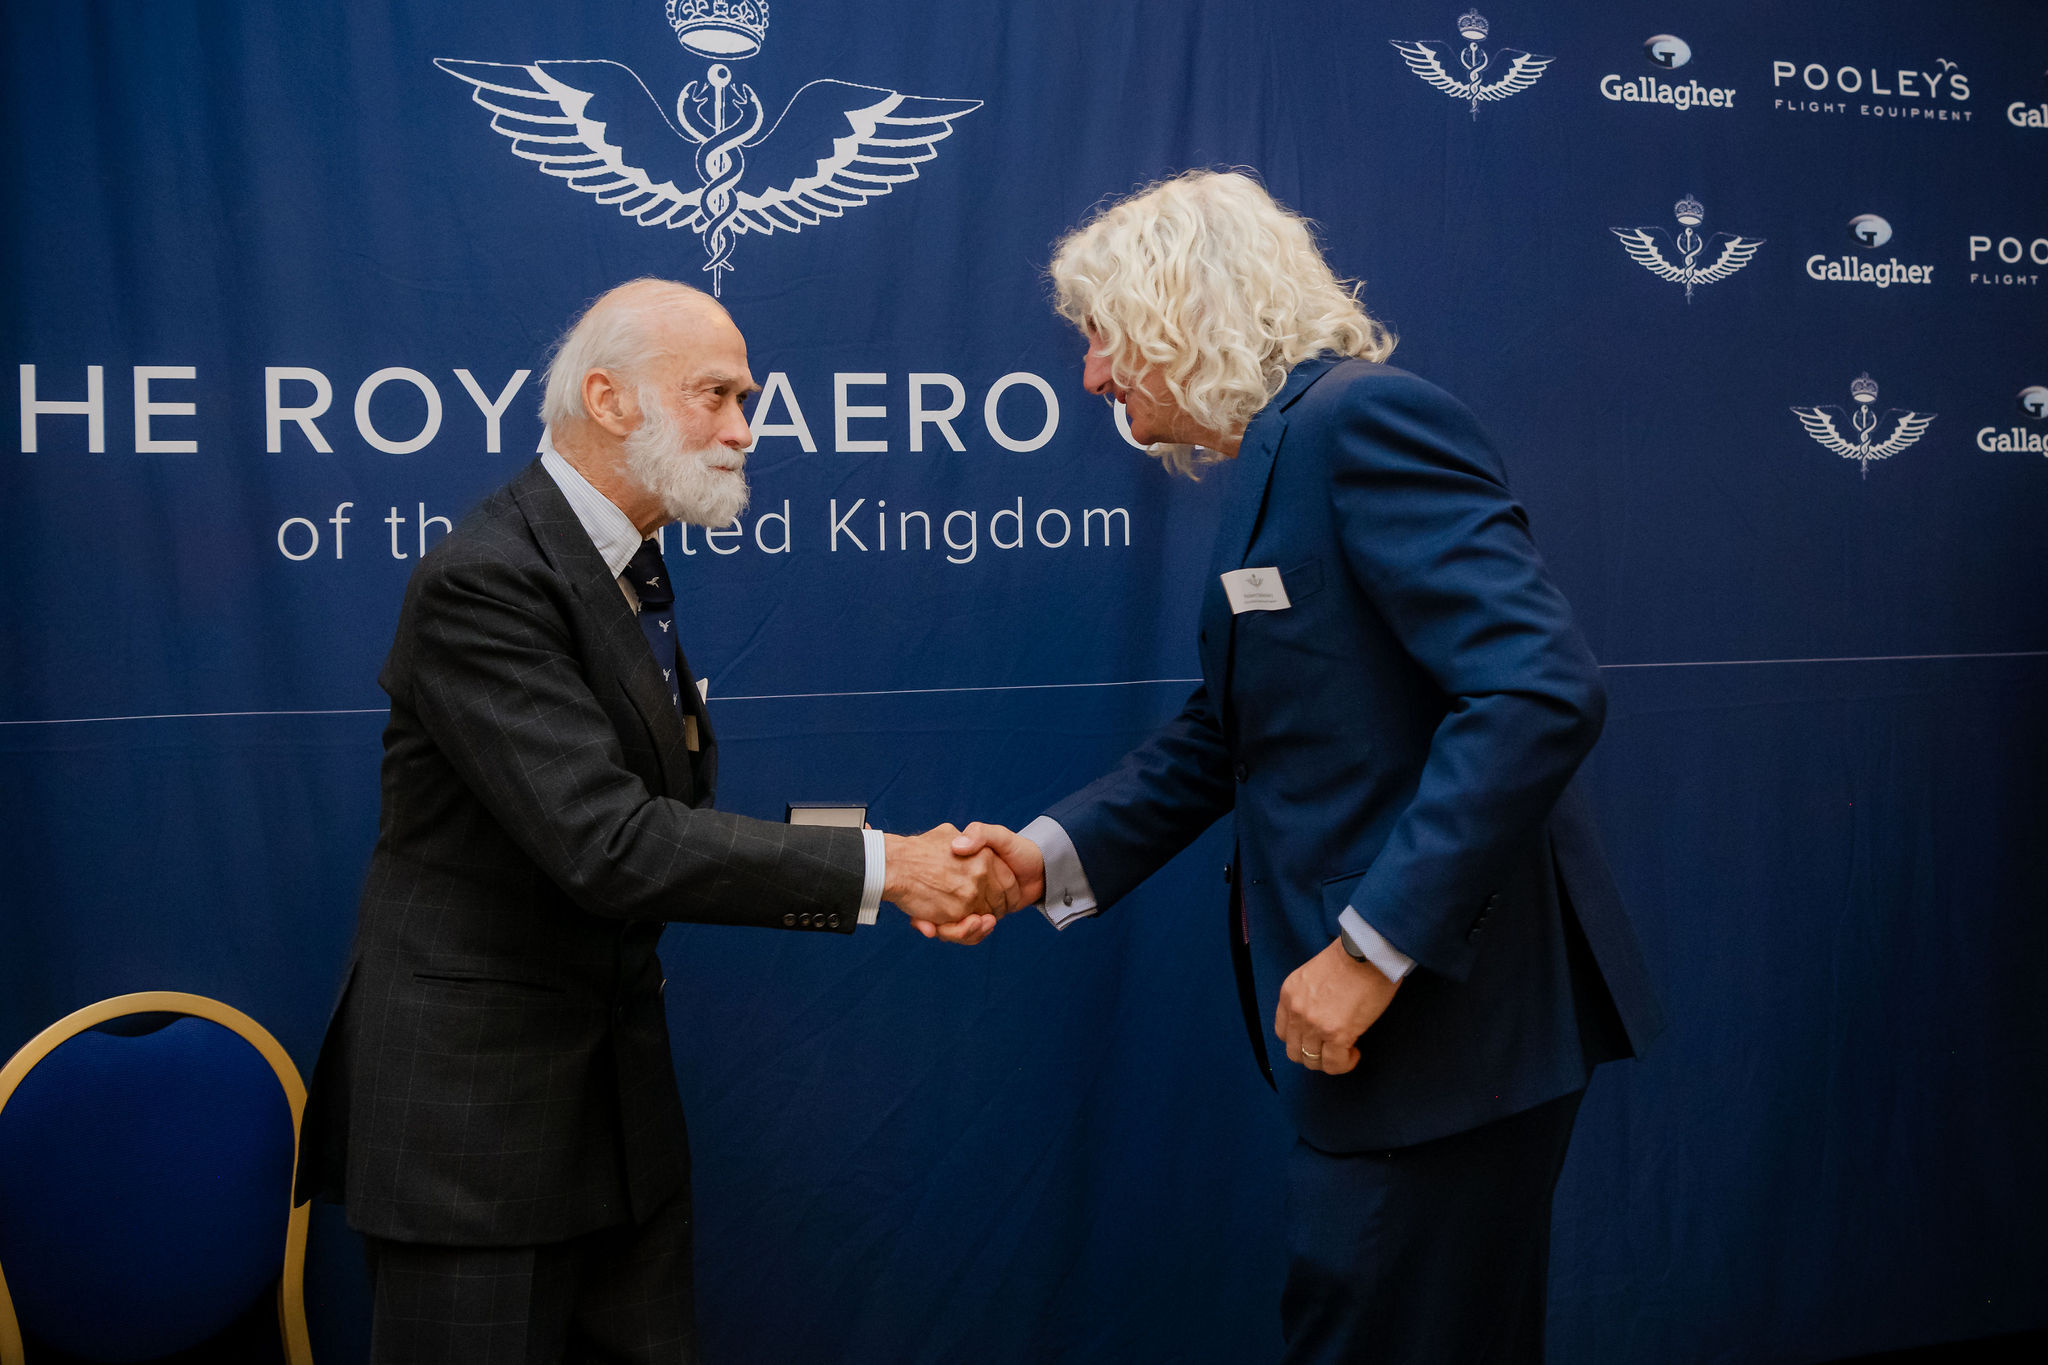 Rob meets his highness at Royal Aero club